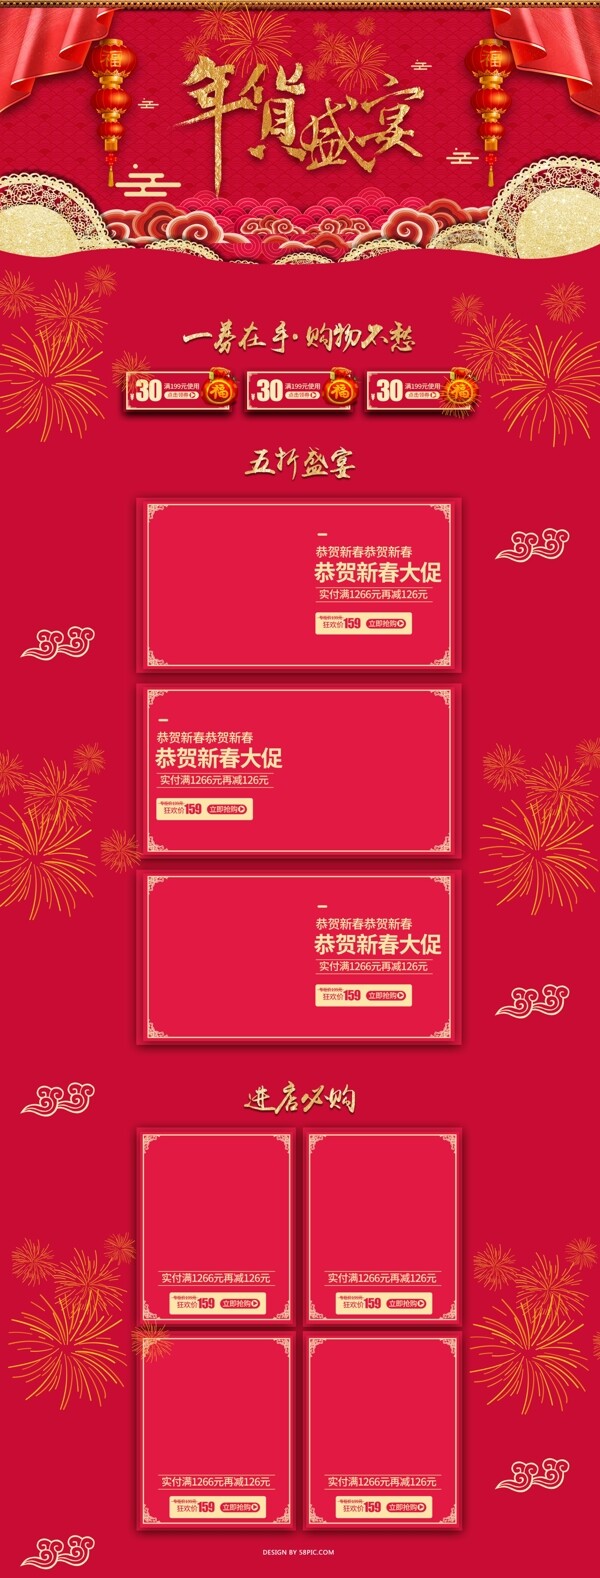 年货盛宴中国红喜庆首页设计